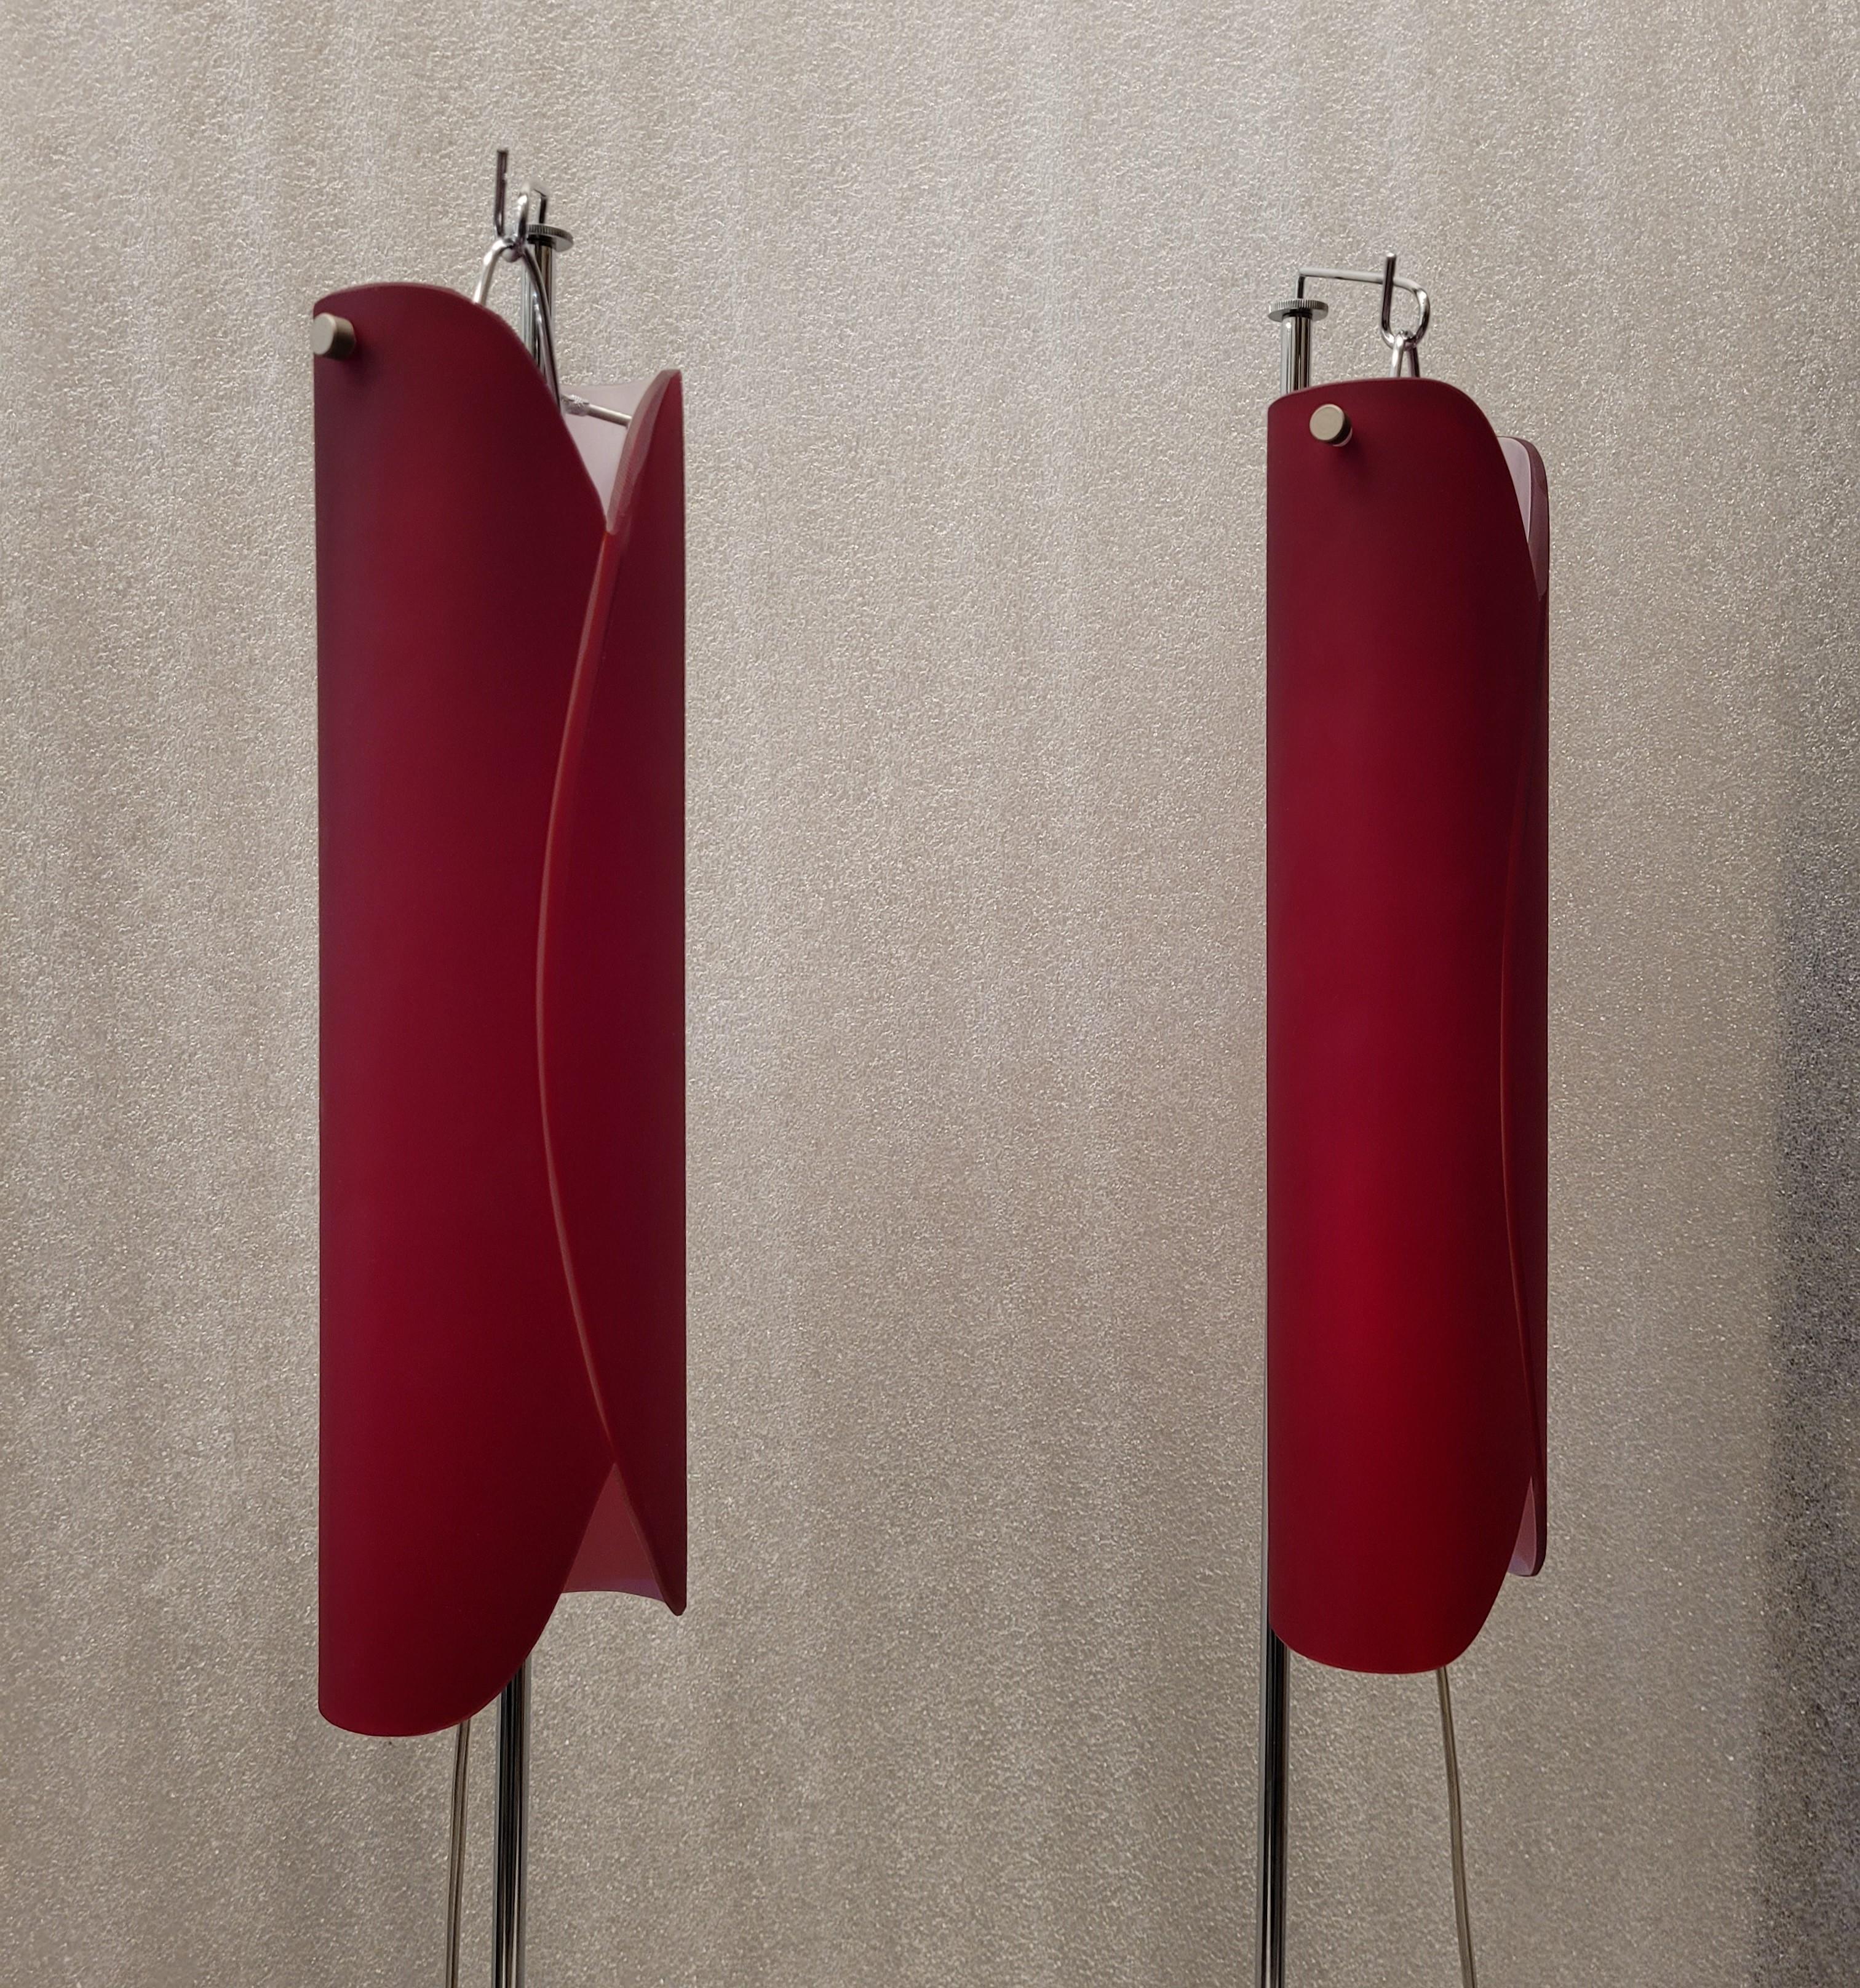 Exceptionnelle paire de lampadaires en acier et verre rouge de Murano réalisée par la manufacture Vivarini pour Roche Bobois. Exquis dans sa conception et sa structure, l'écran est fait de verre incurvé, rouge à l'extérieur et blanc à l'intérieur,